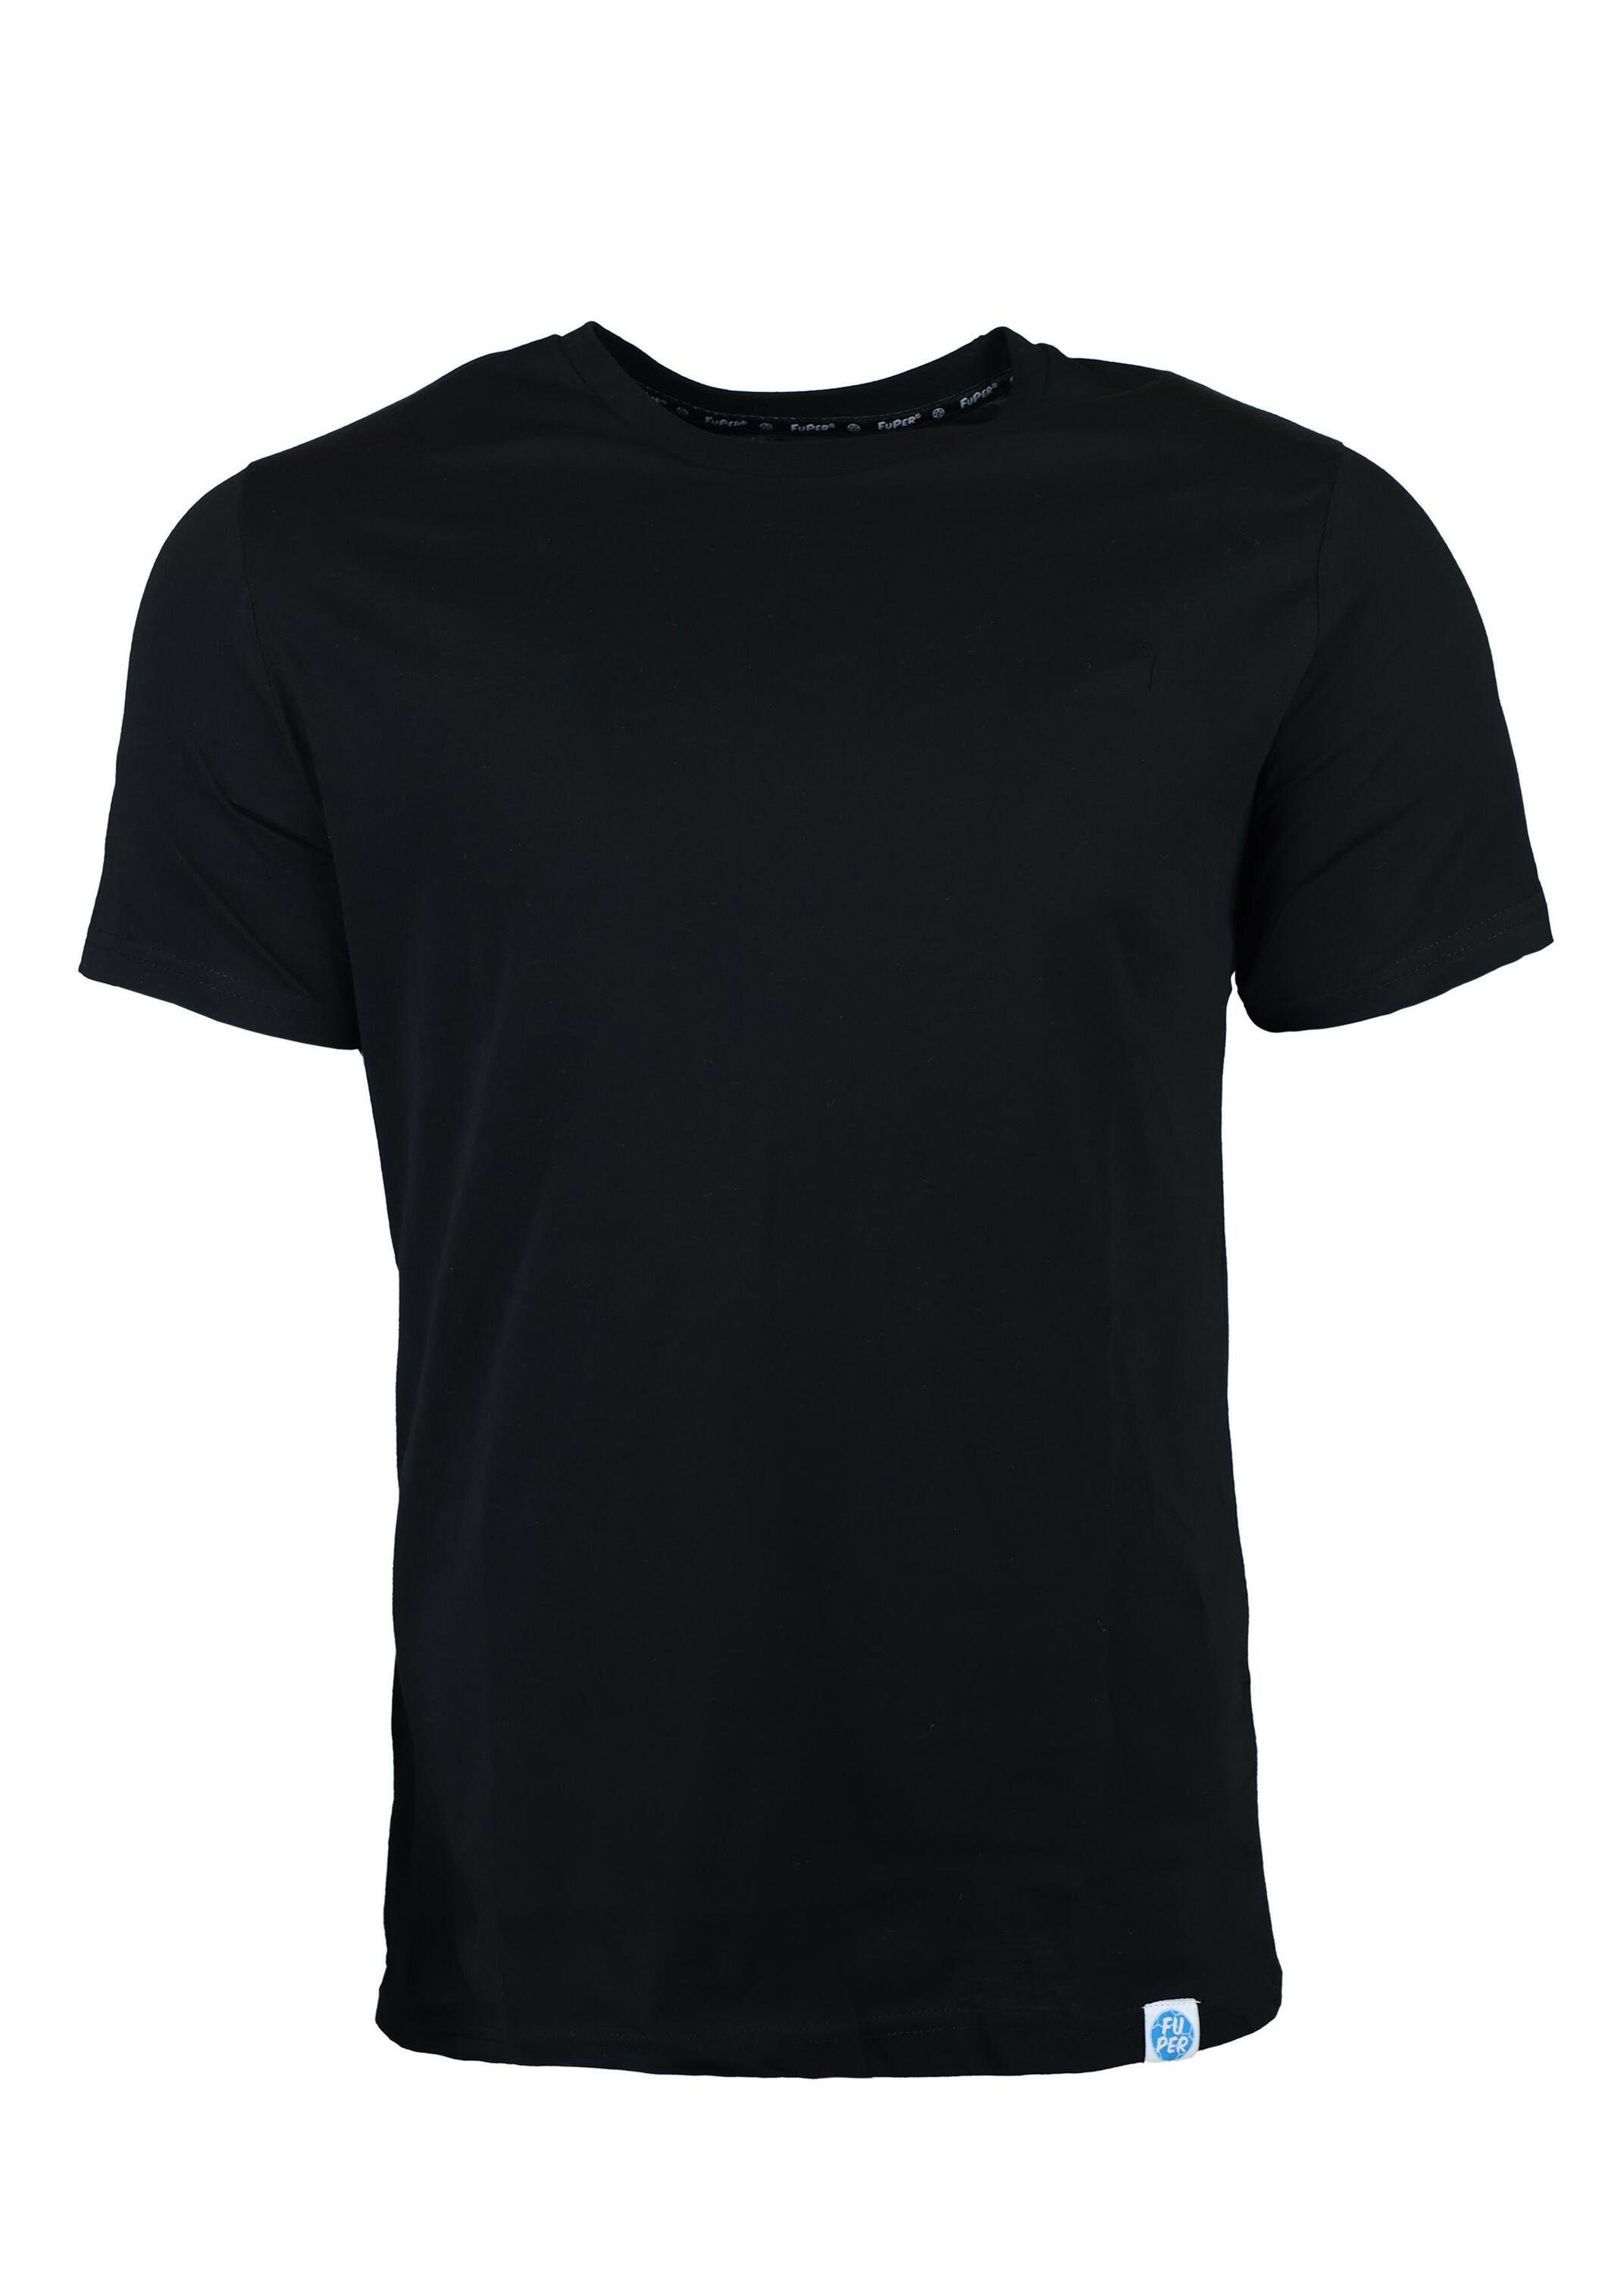 FuPer T-Shirt Karl für Kinder, aus Baumwolle, Fußball, Jugend Black